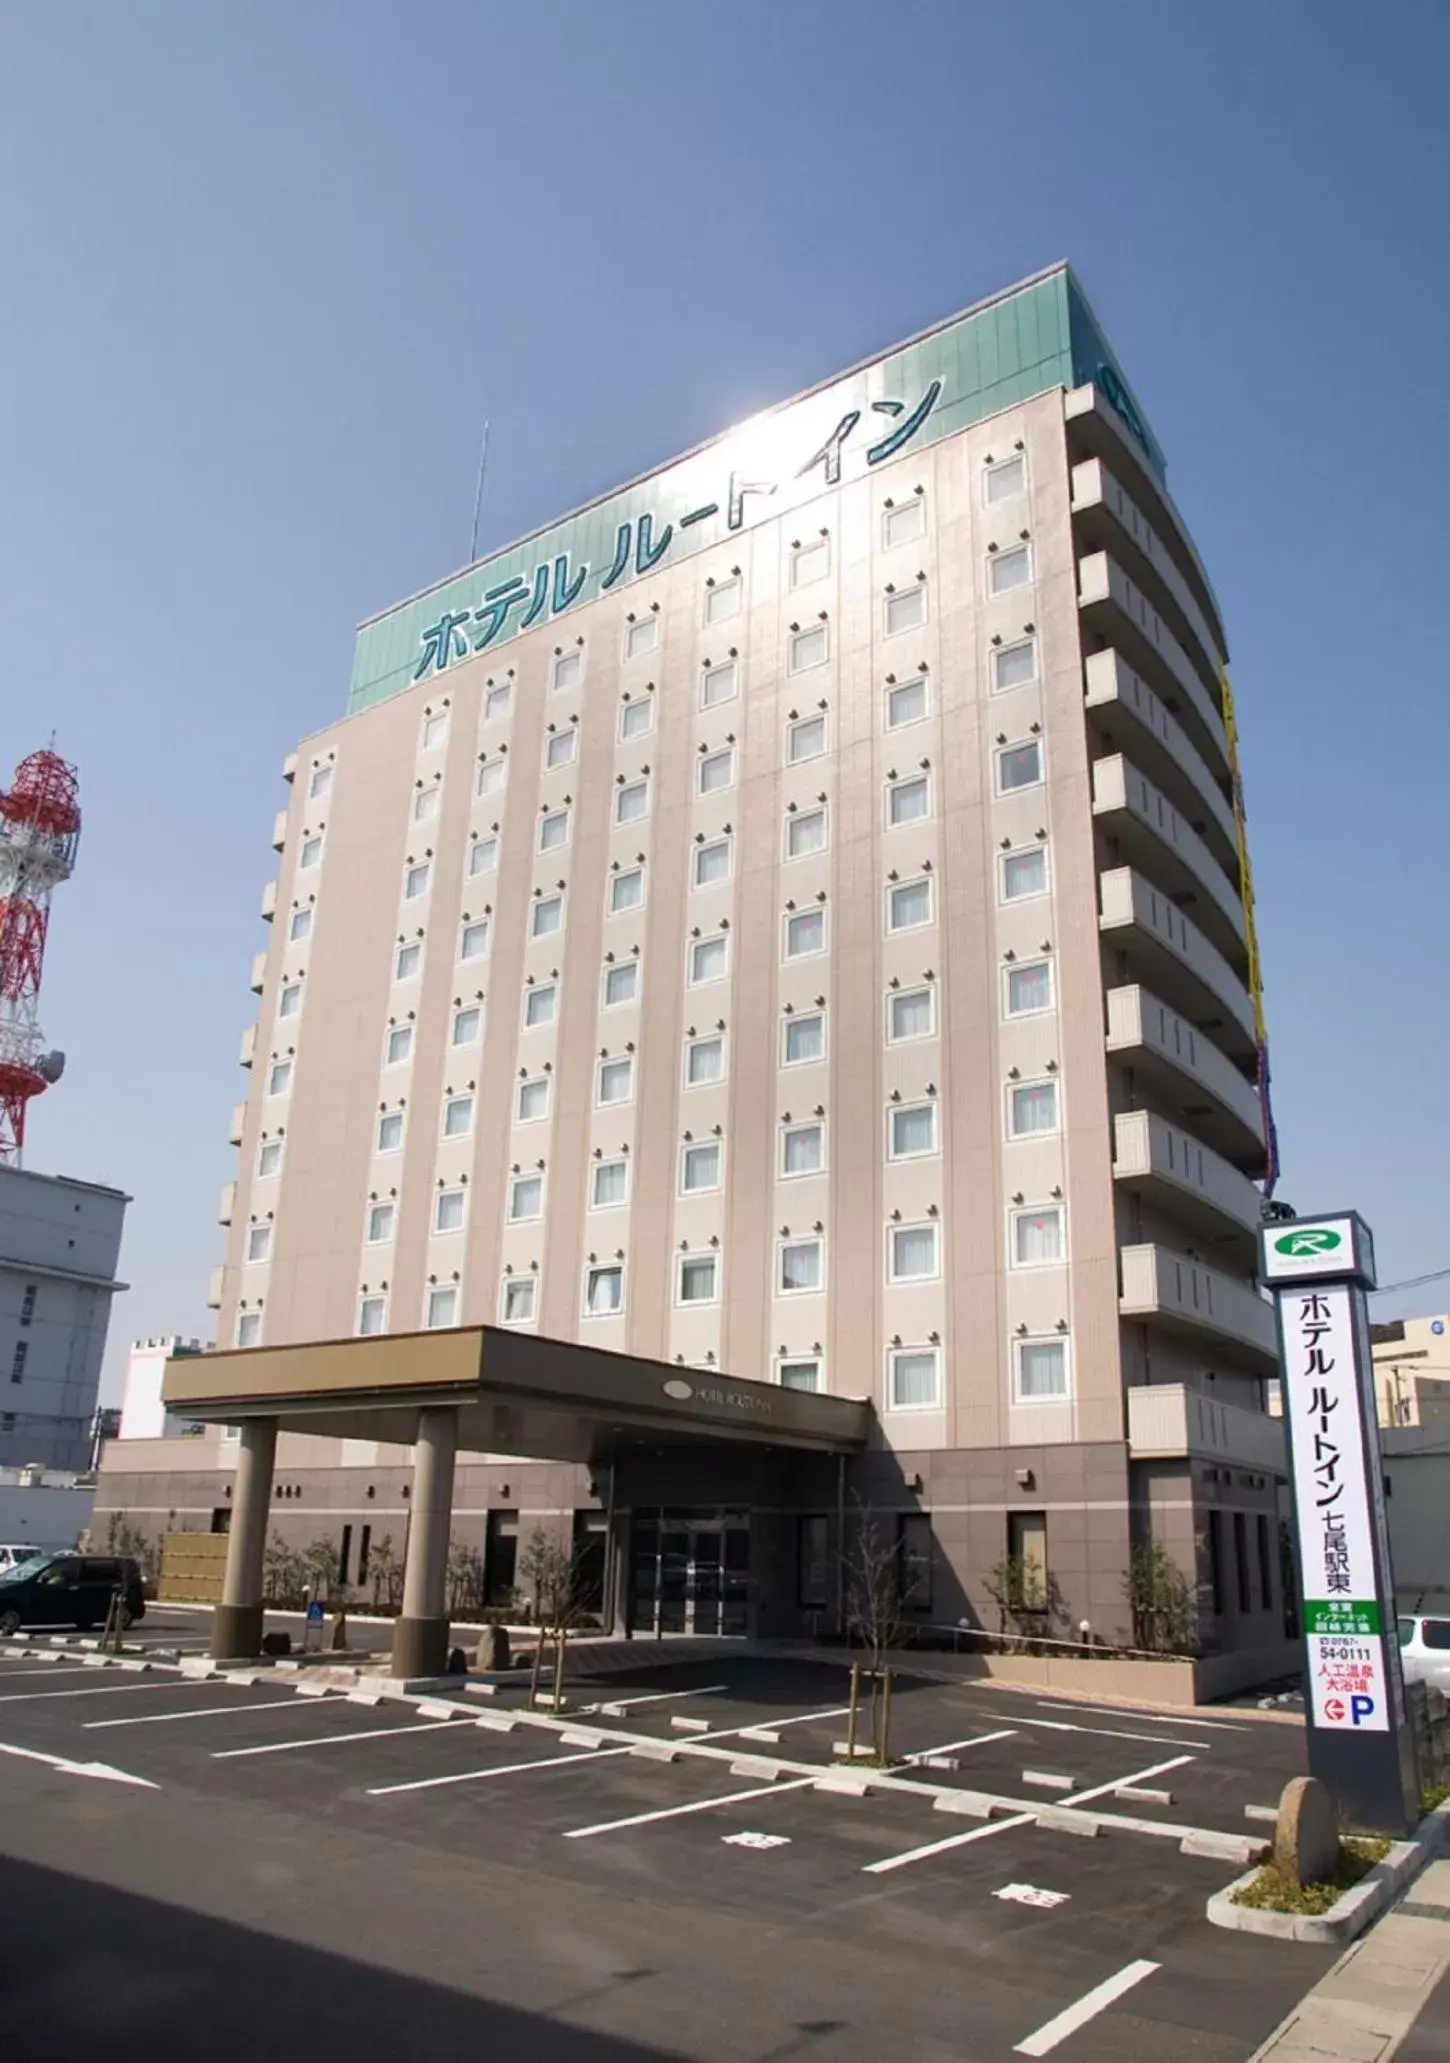 Facade/entrance, Property Building in Hotel Route-Inn Nanao Ekihigashi